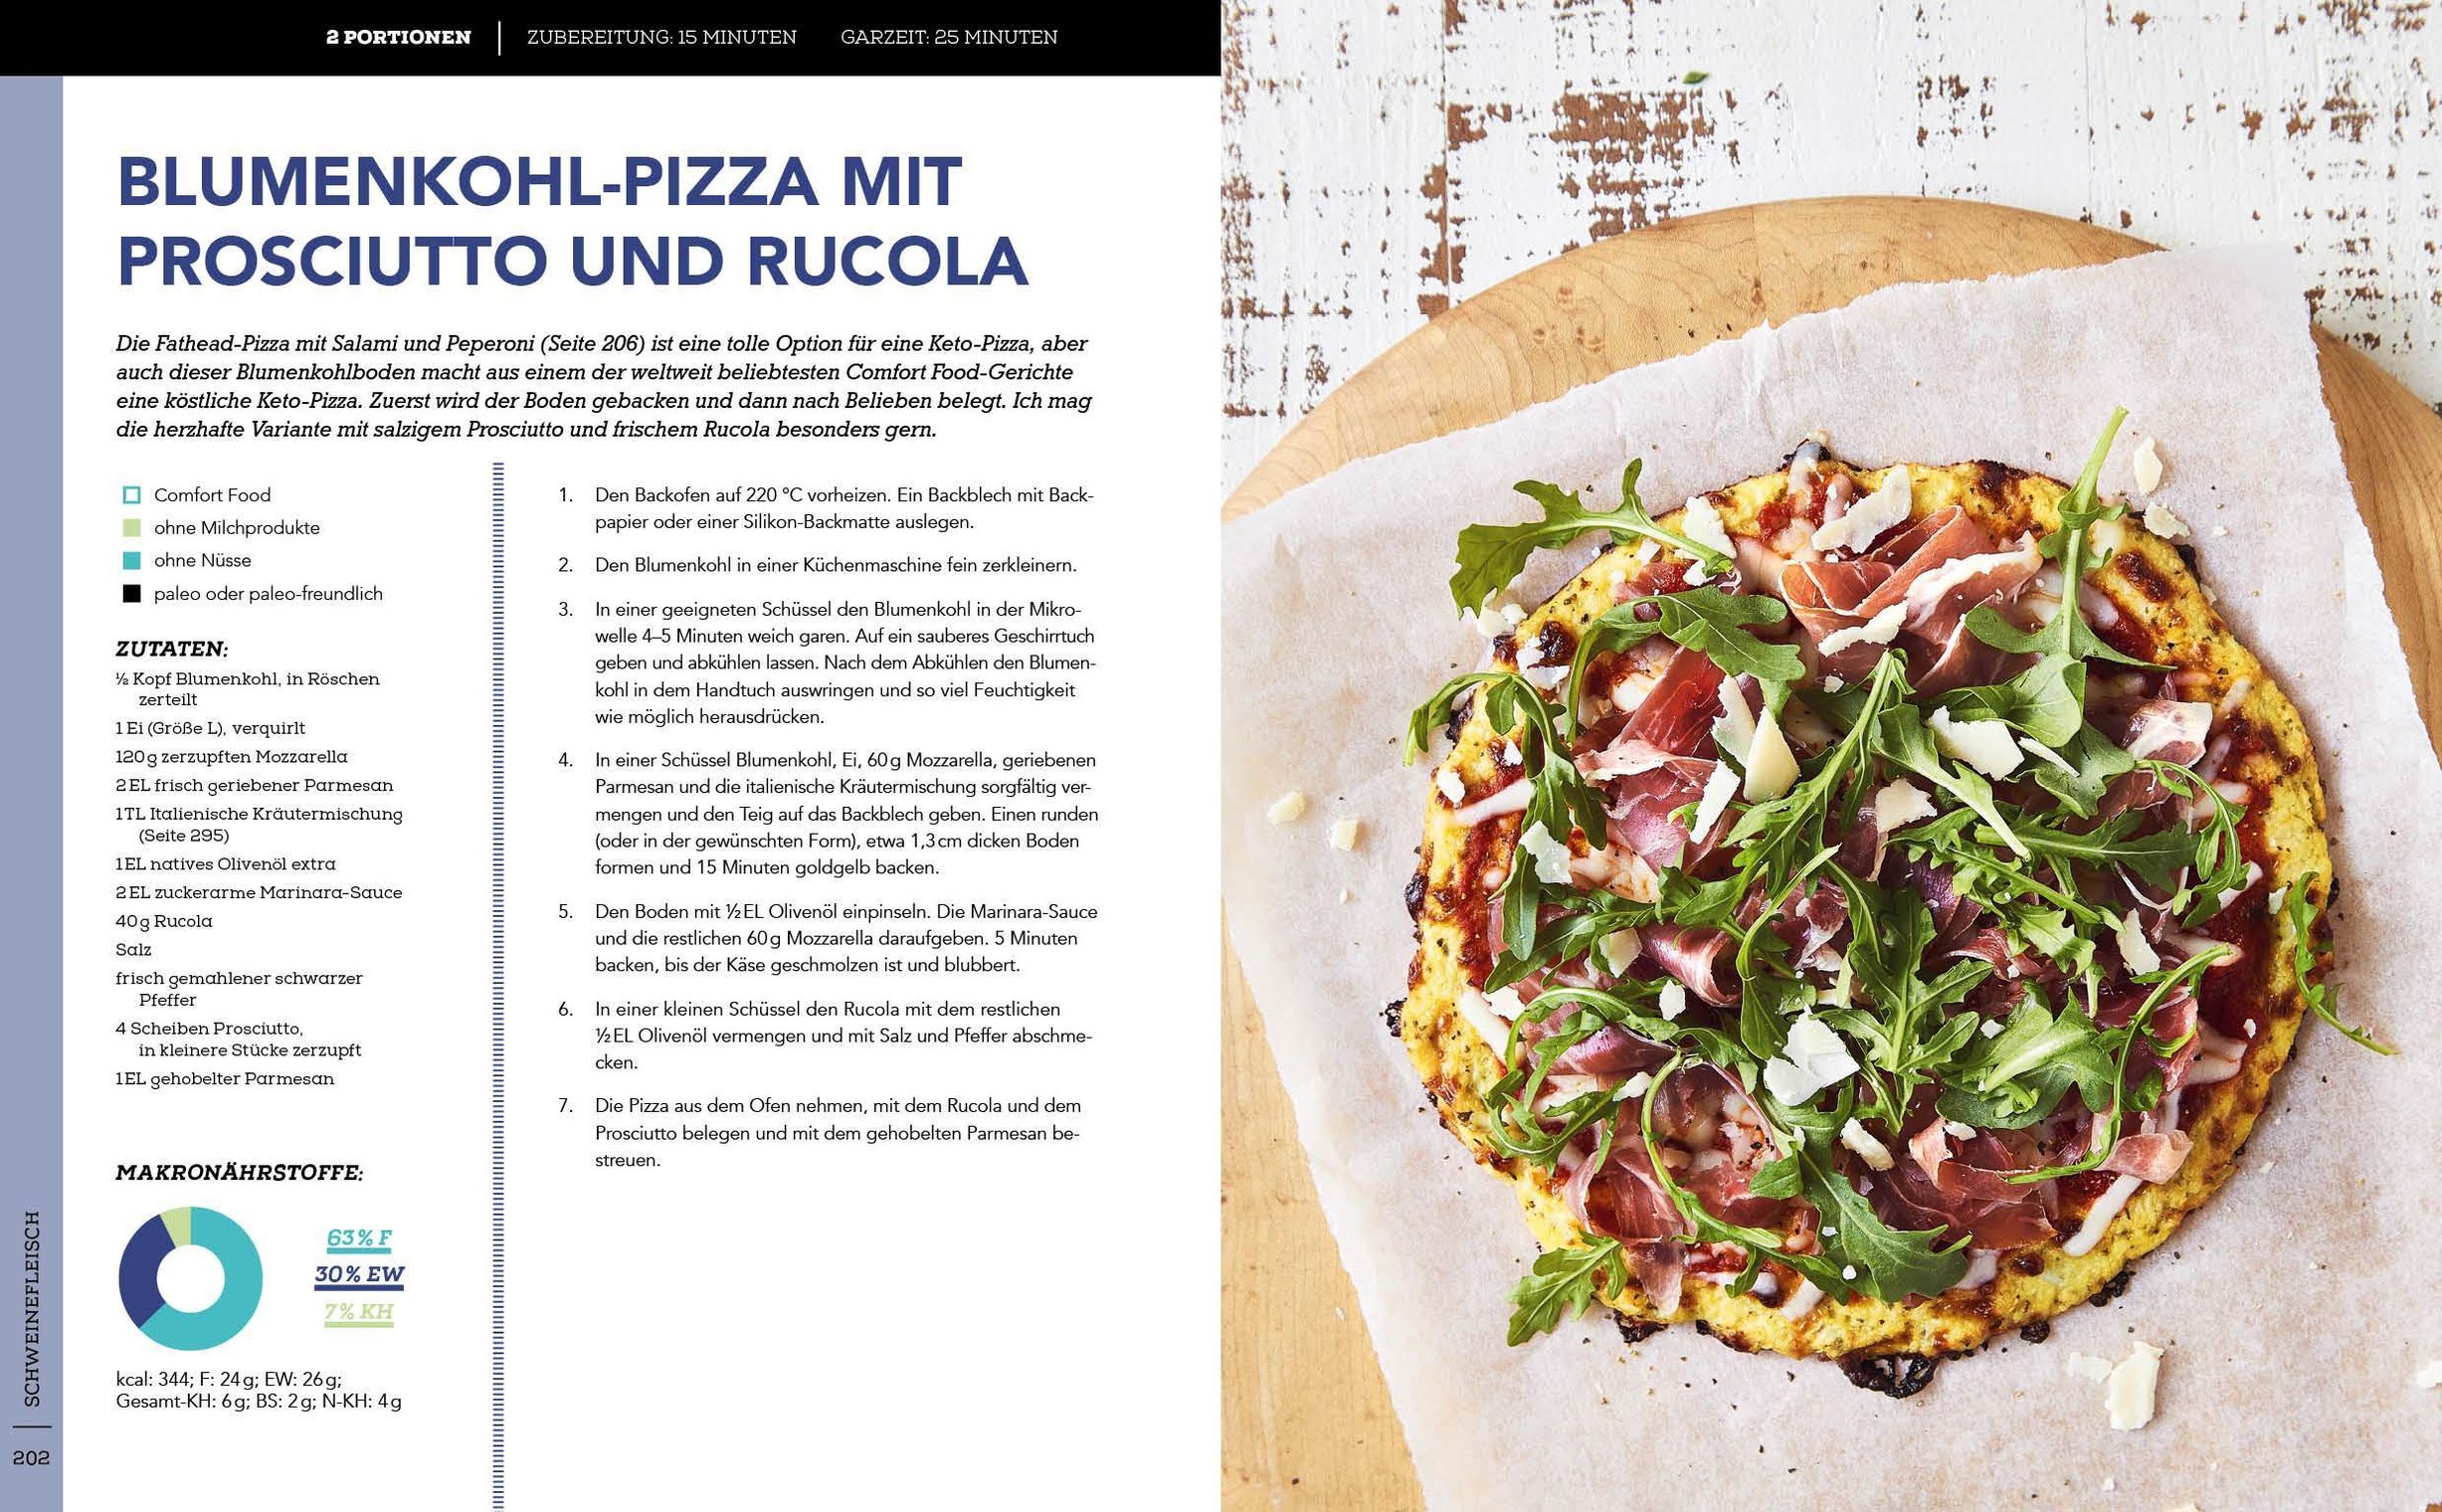 Die Keto-Bibel - Das große Low Carb High Fat-Kochbuch online kaufen -  Orbisana